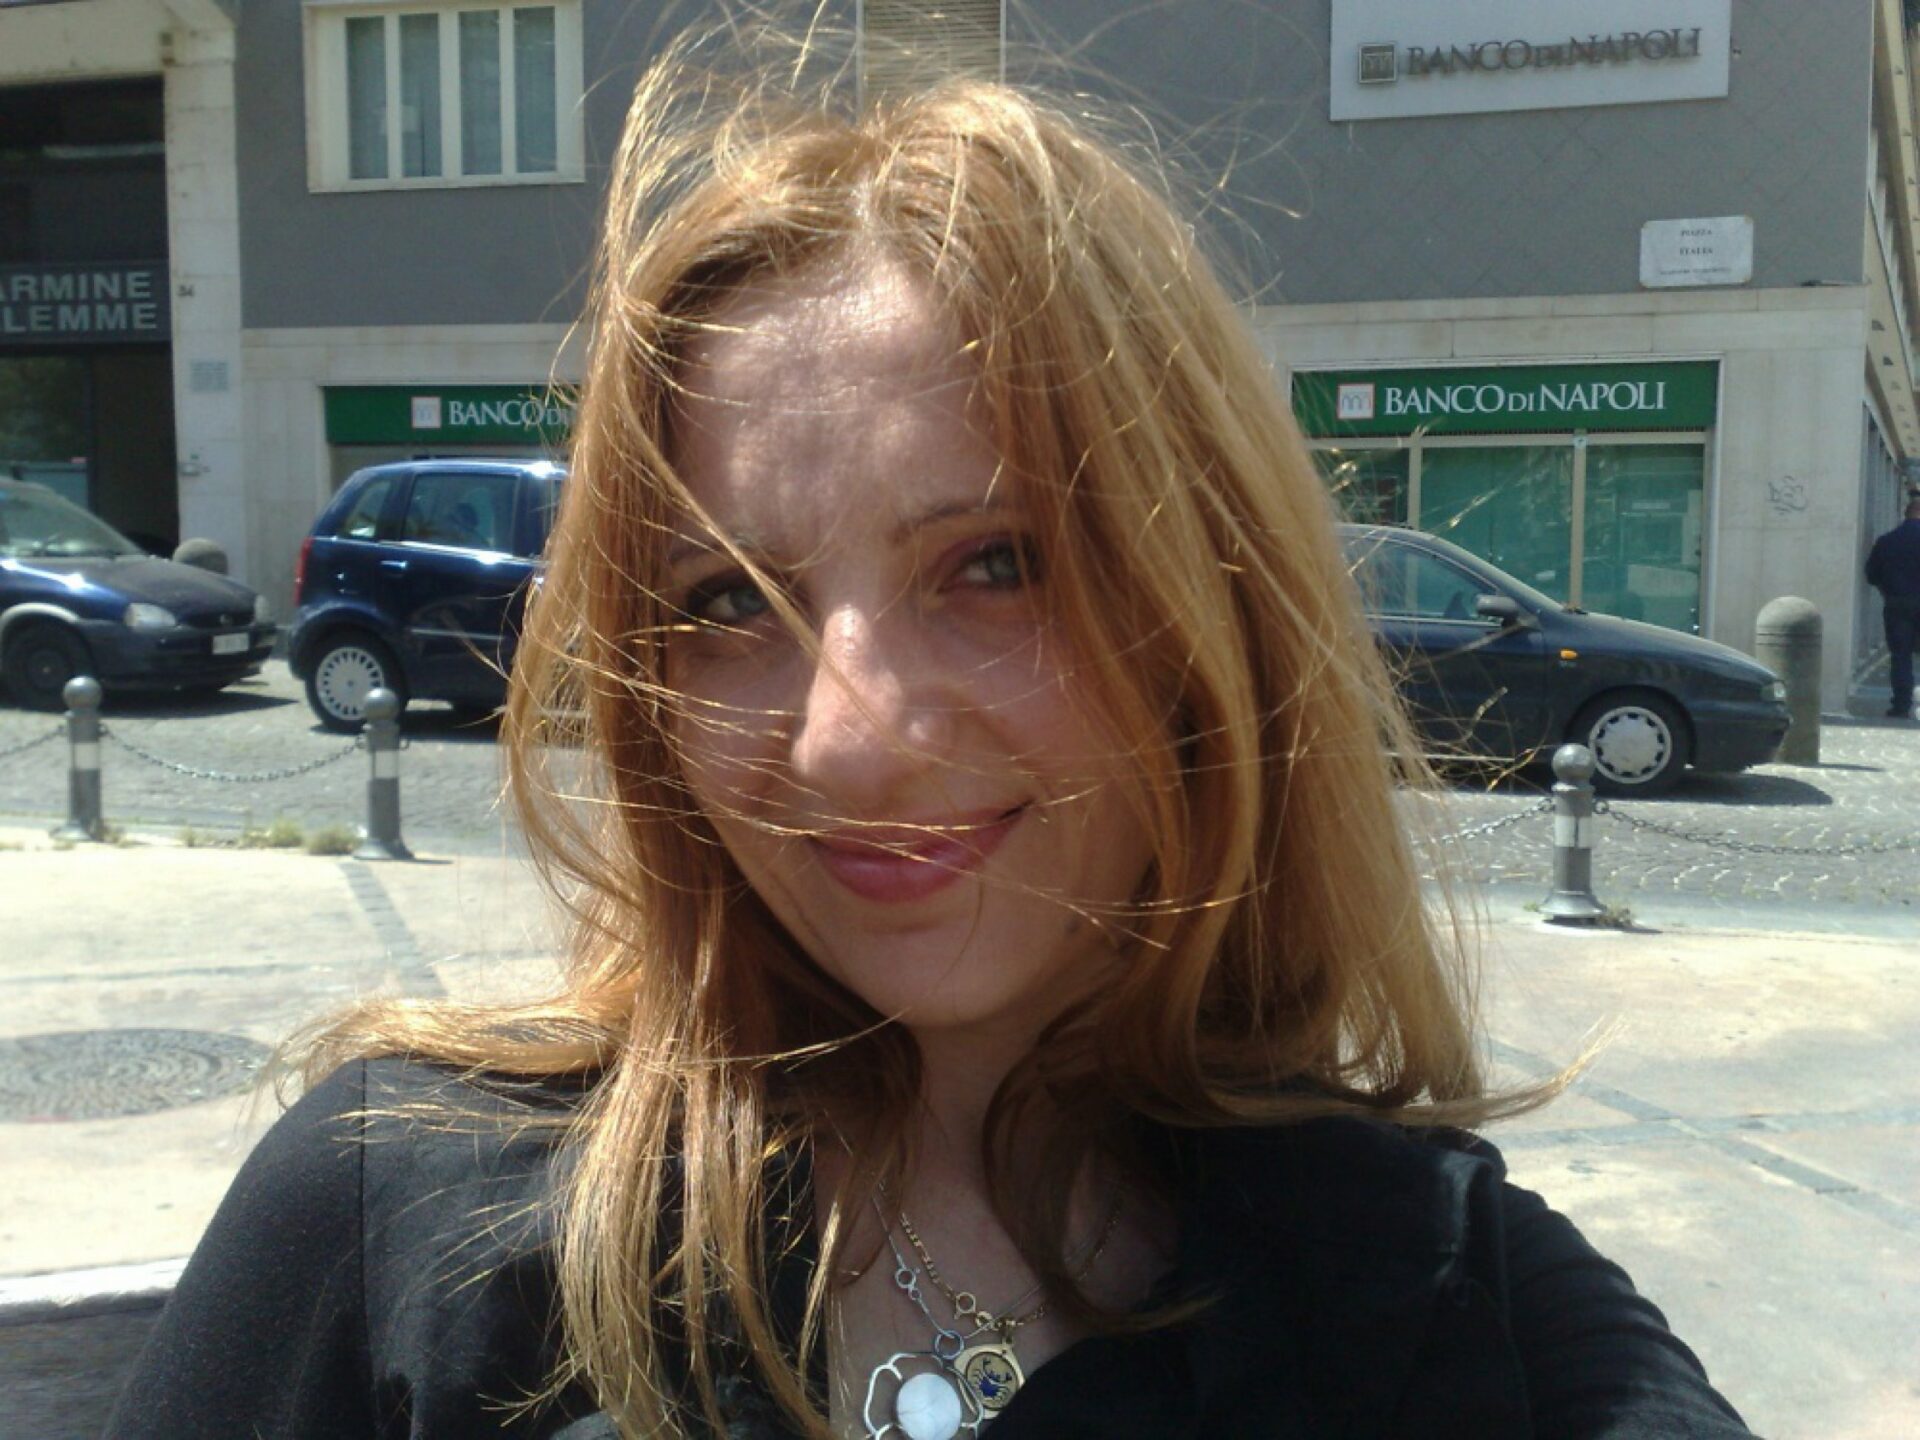 Manuela Minopoli